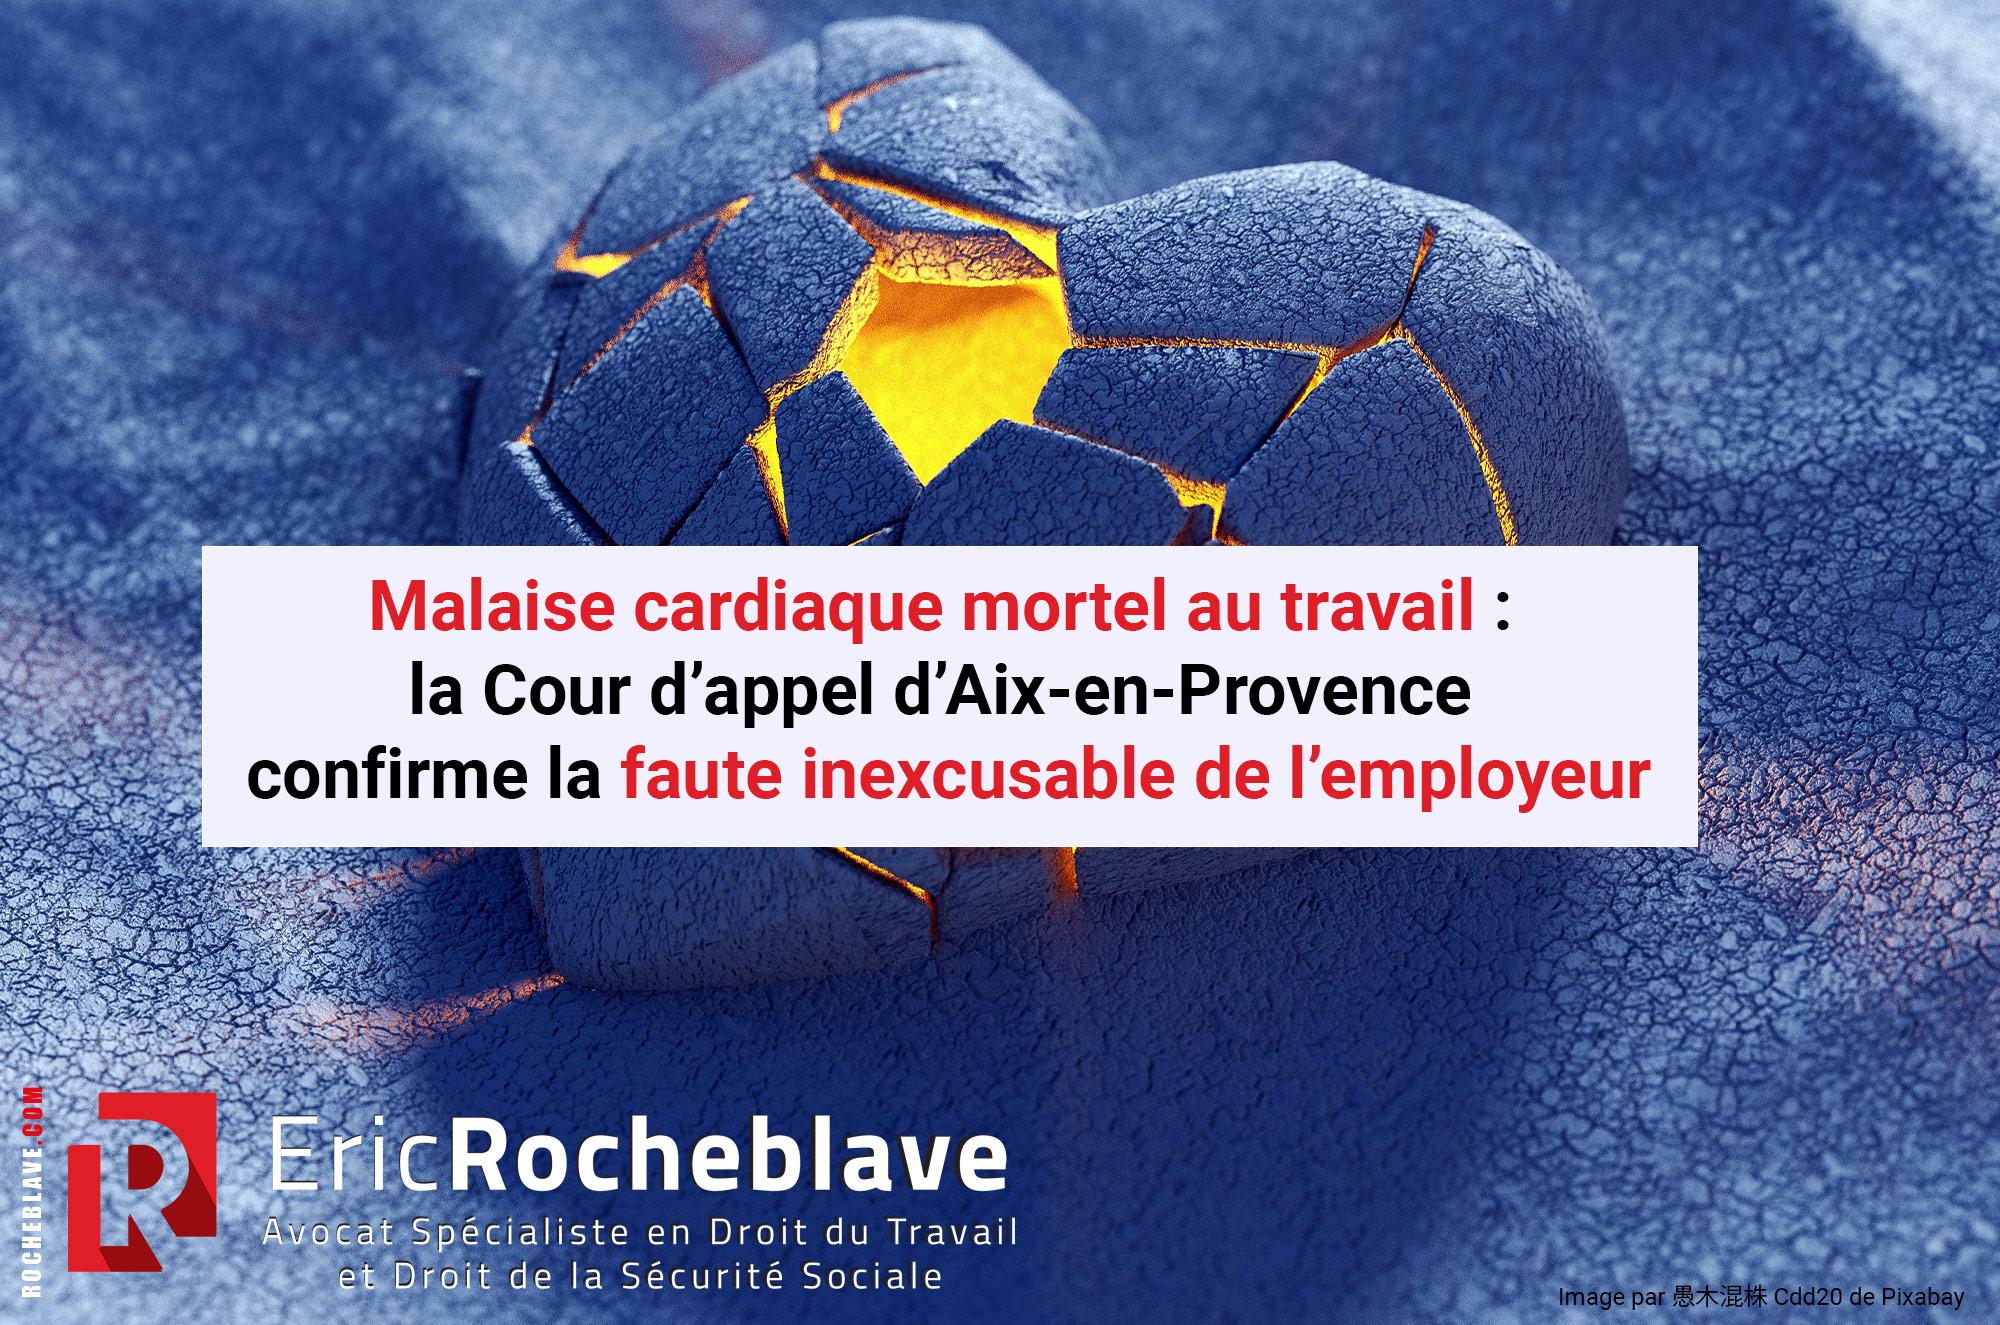 Malaise cardiaque mortel au travail : la Cour d’appel d’Aix-en-Provence confirme la faute inexcusable de l’employeur